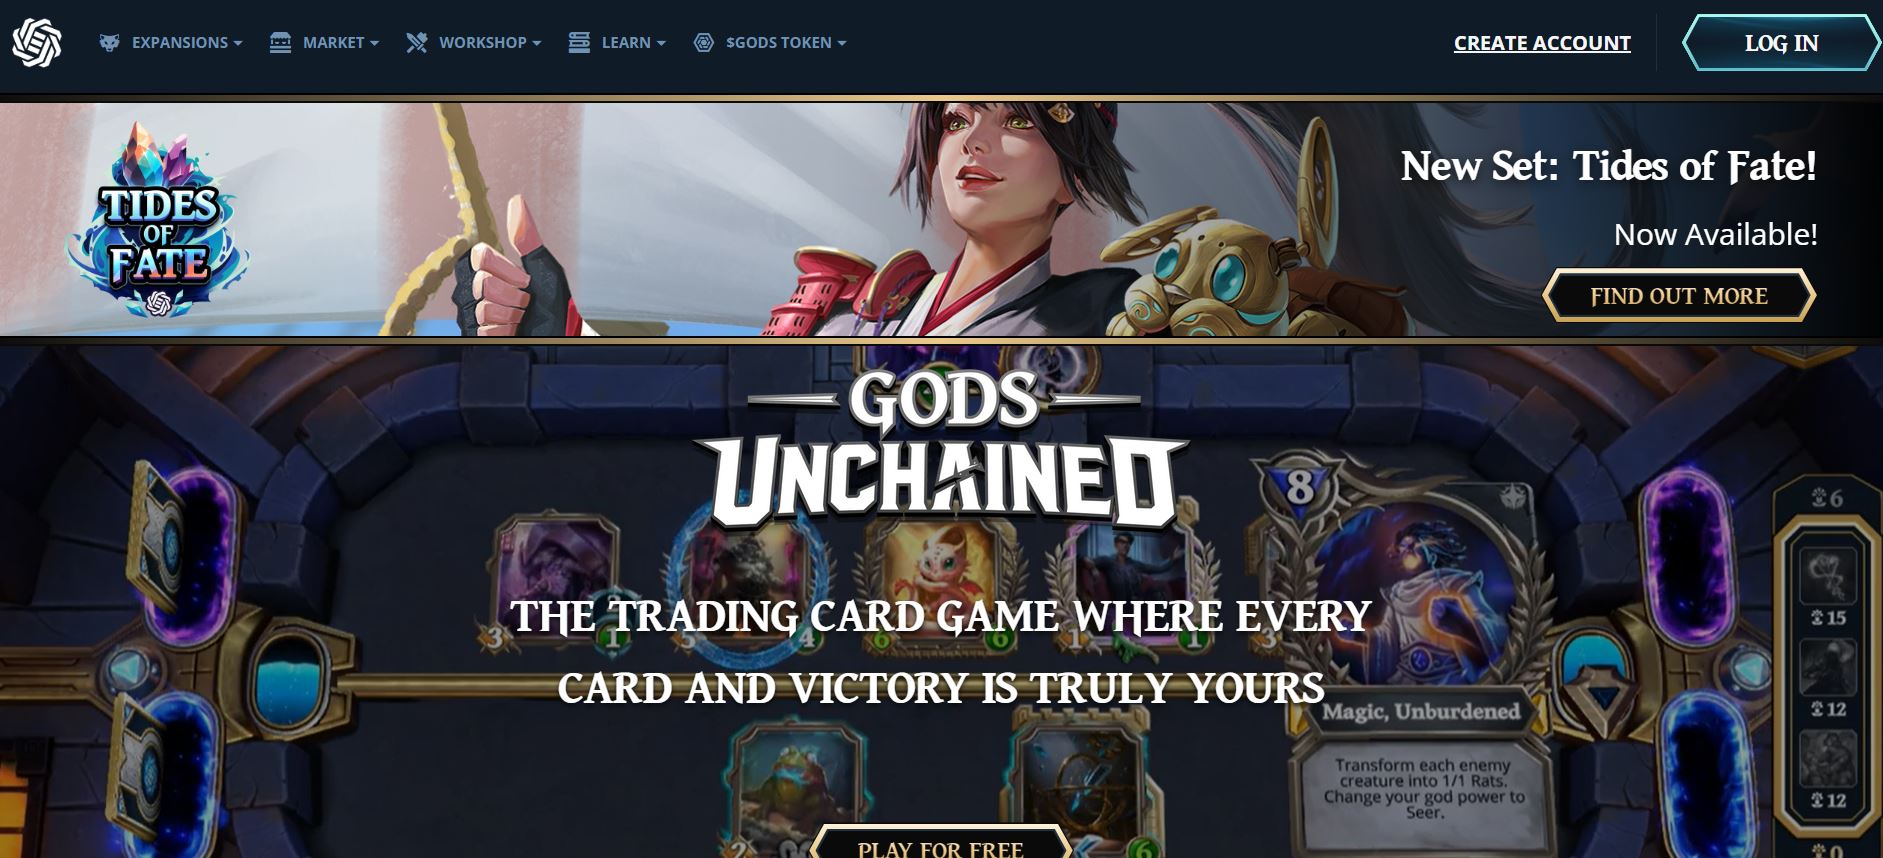 Gods Unchained je nyní na Amazon Prime Gaming s exkluzivními měsíčními odměnami